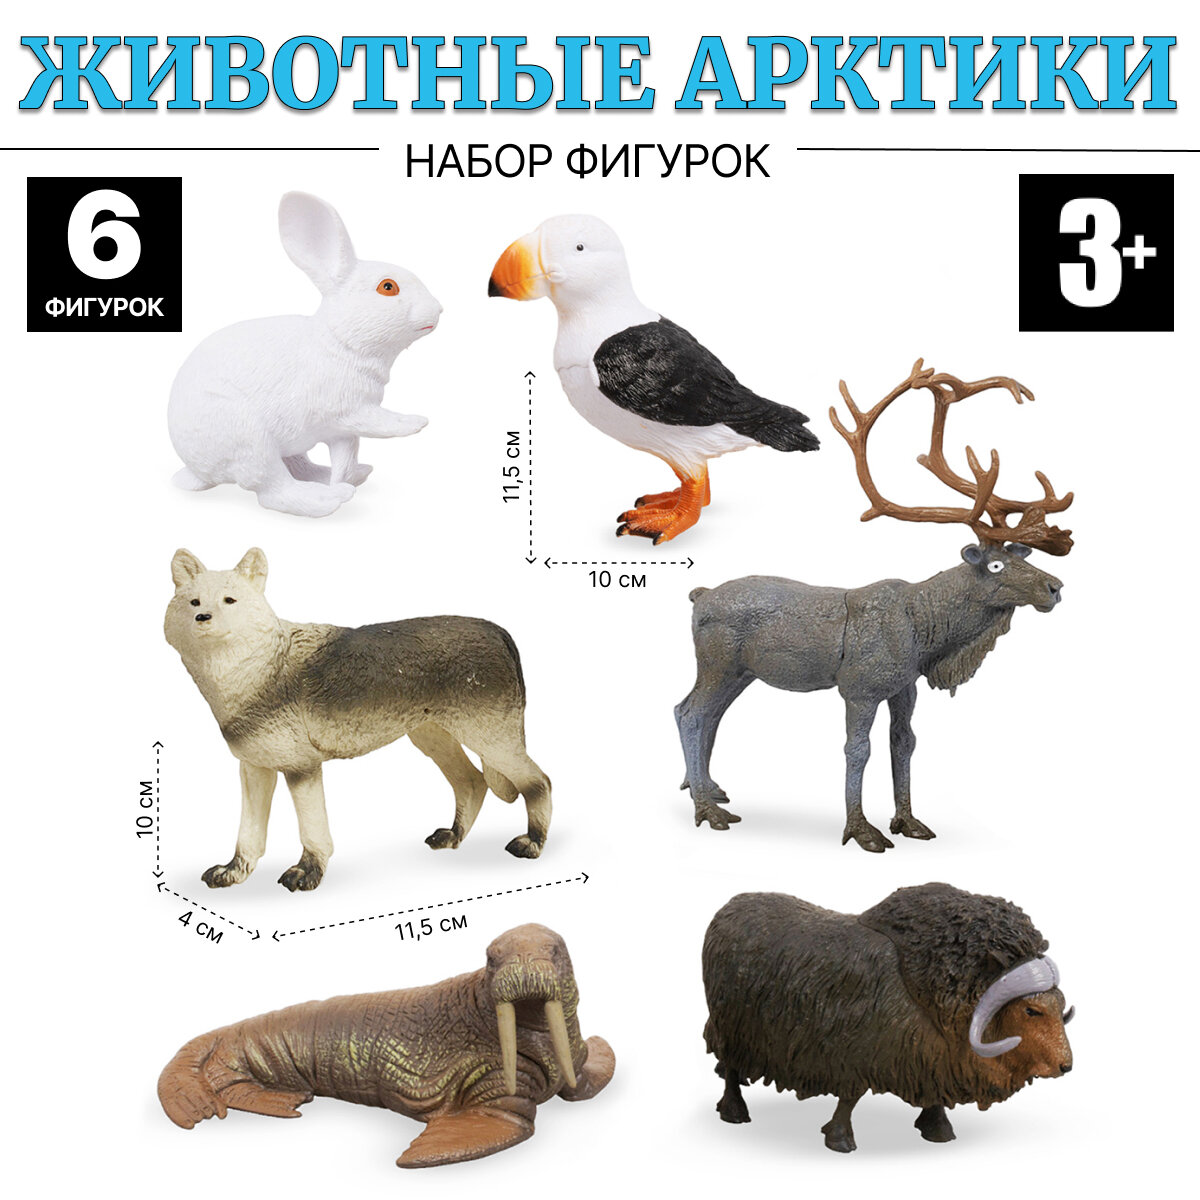 Набор животные Арктики FAUNA THE WORLD 6 фигурок (JD7-007B)